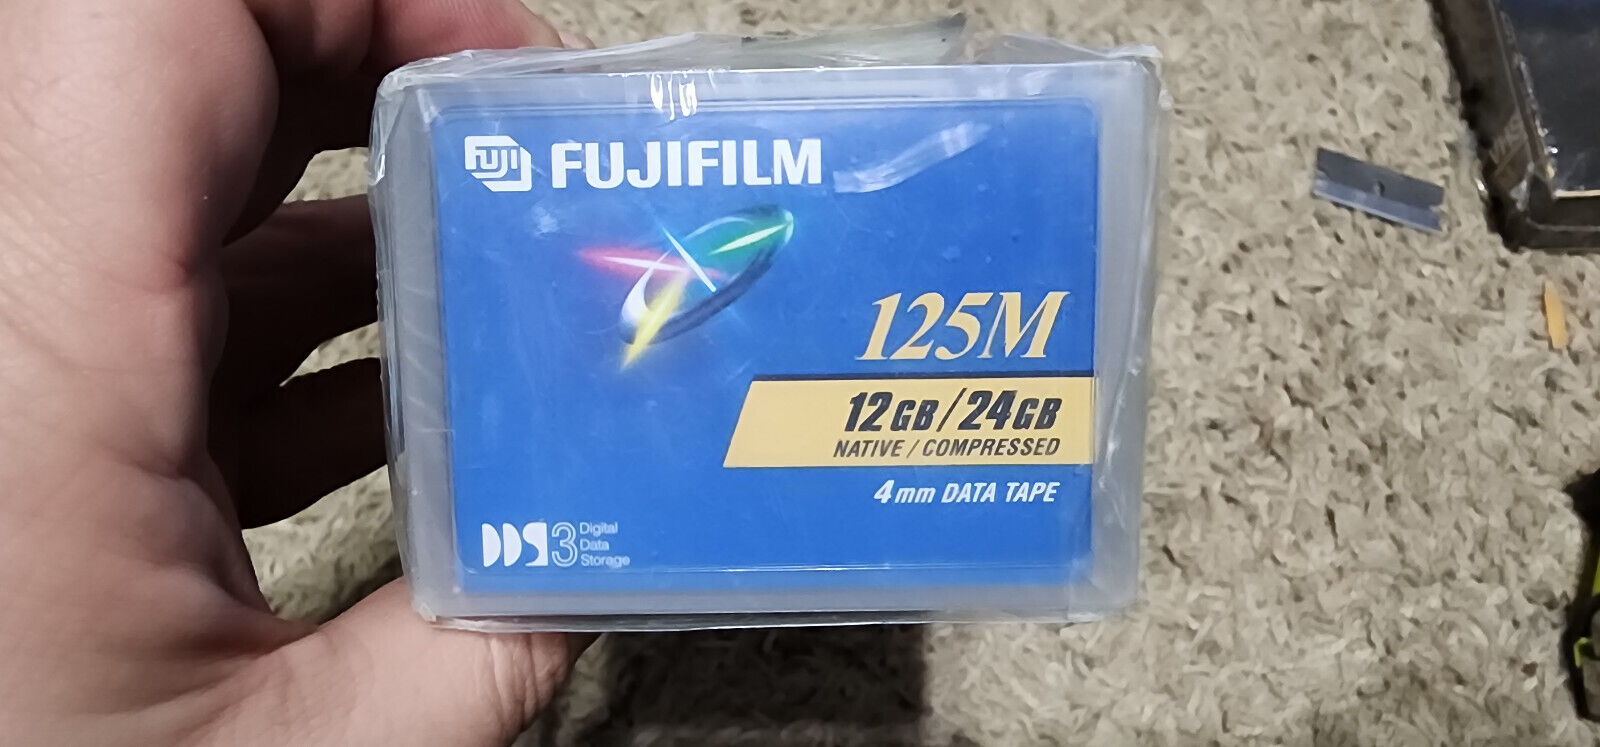 Lot of 6 New FujiFilm DDS-3 DAT 125M 4mm 12/24GB tape Data Cartridges